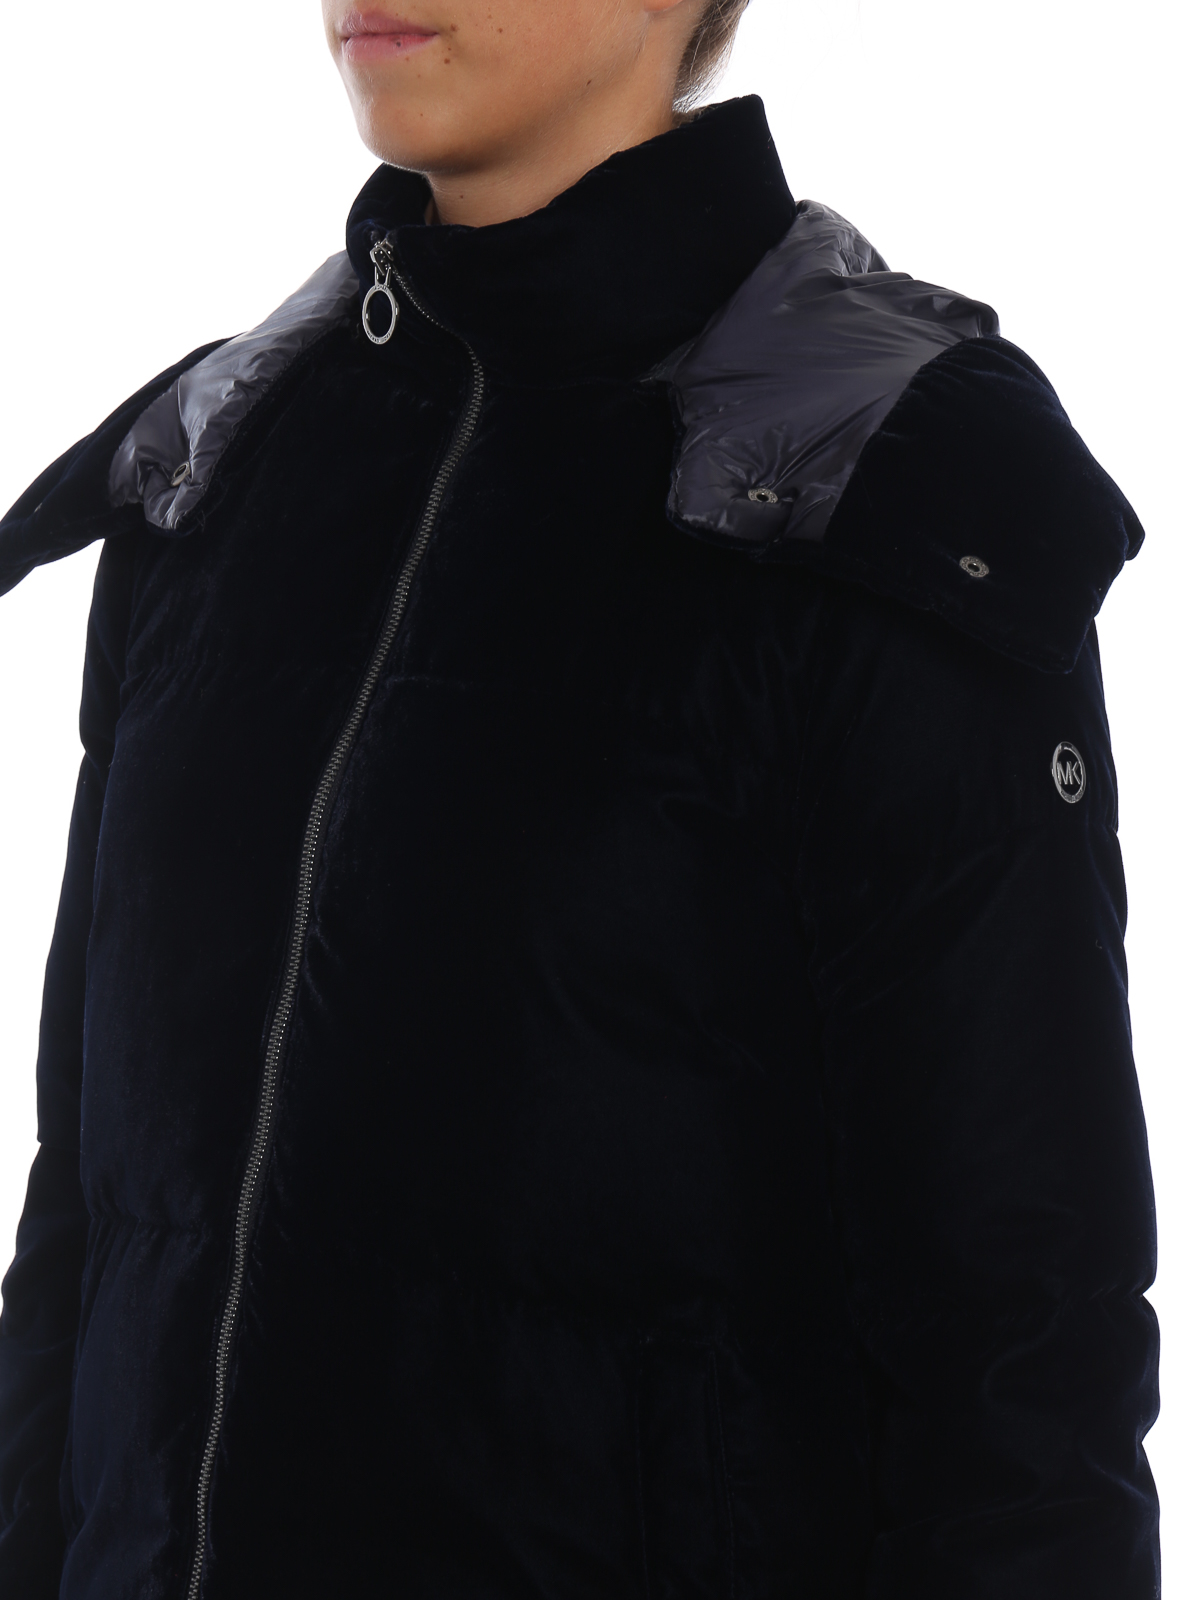 Michael Kors - Navy velvet down jacket 